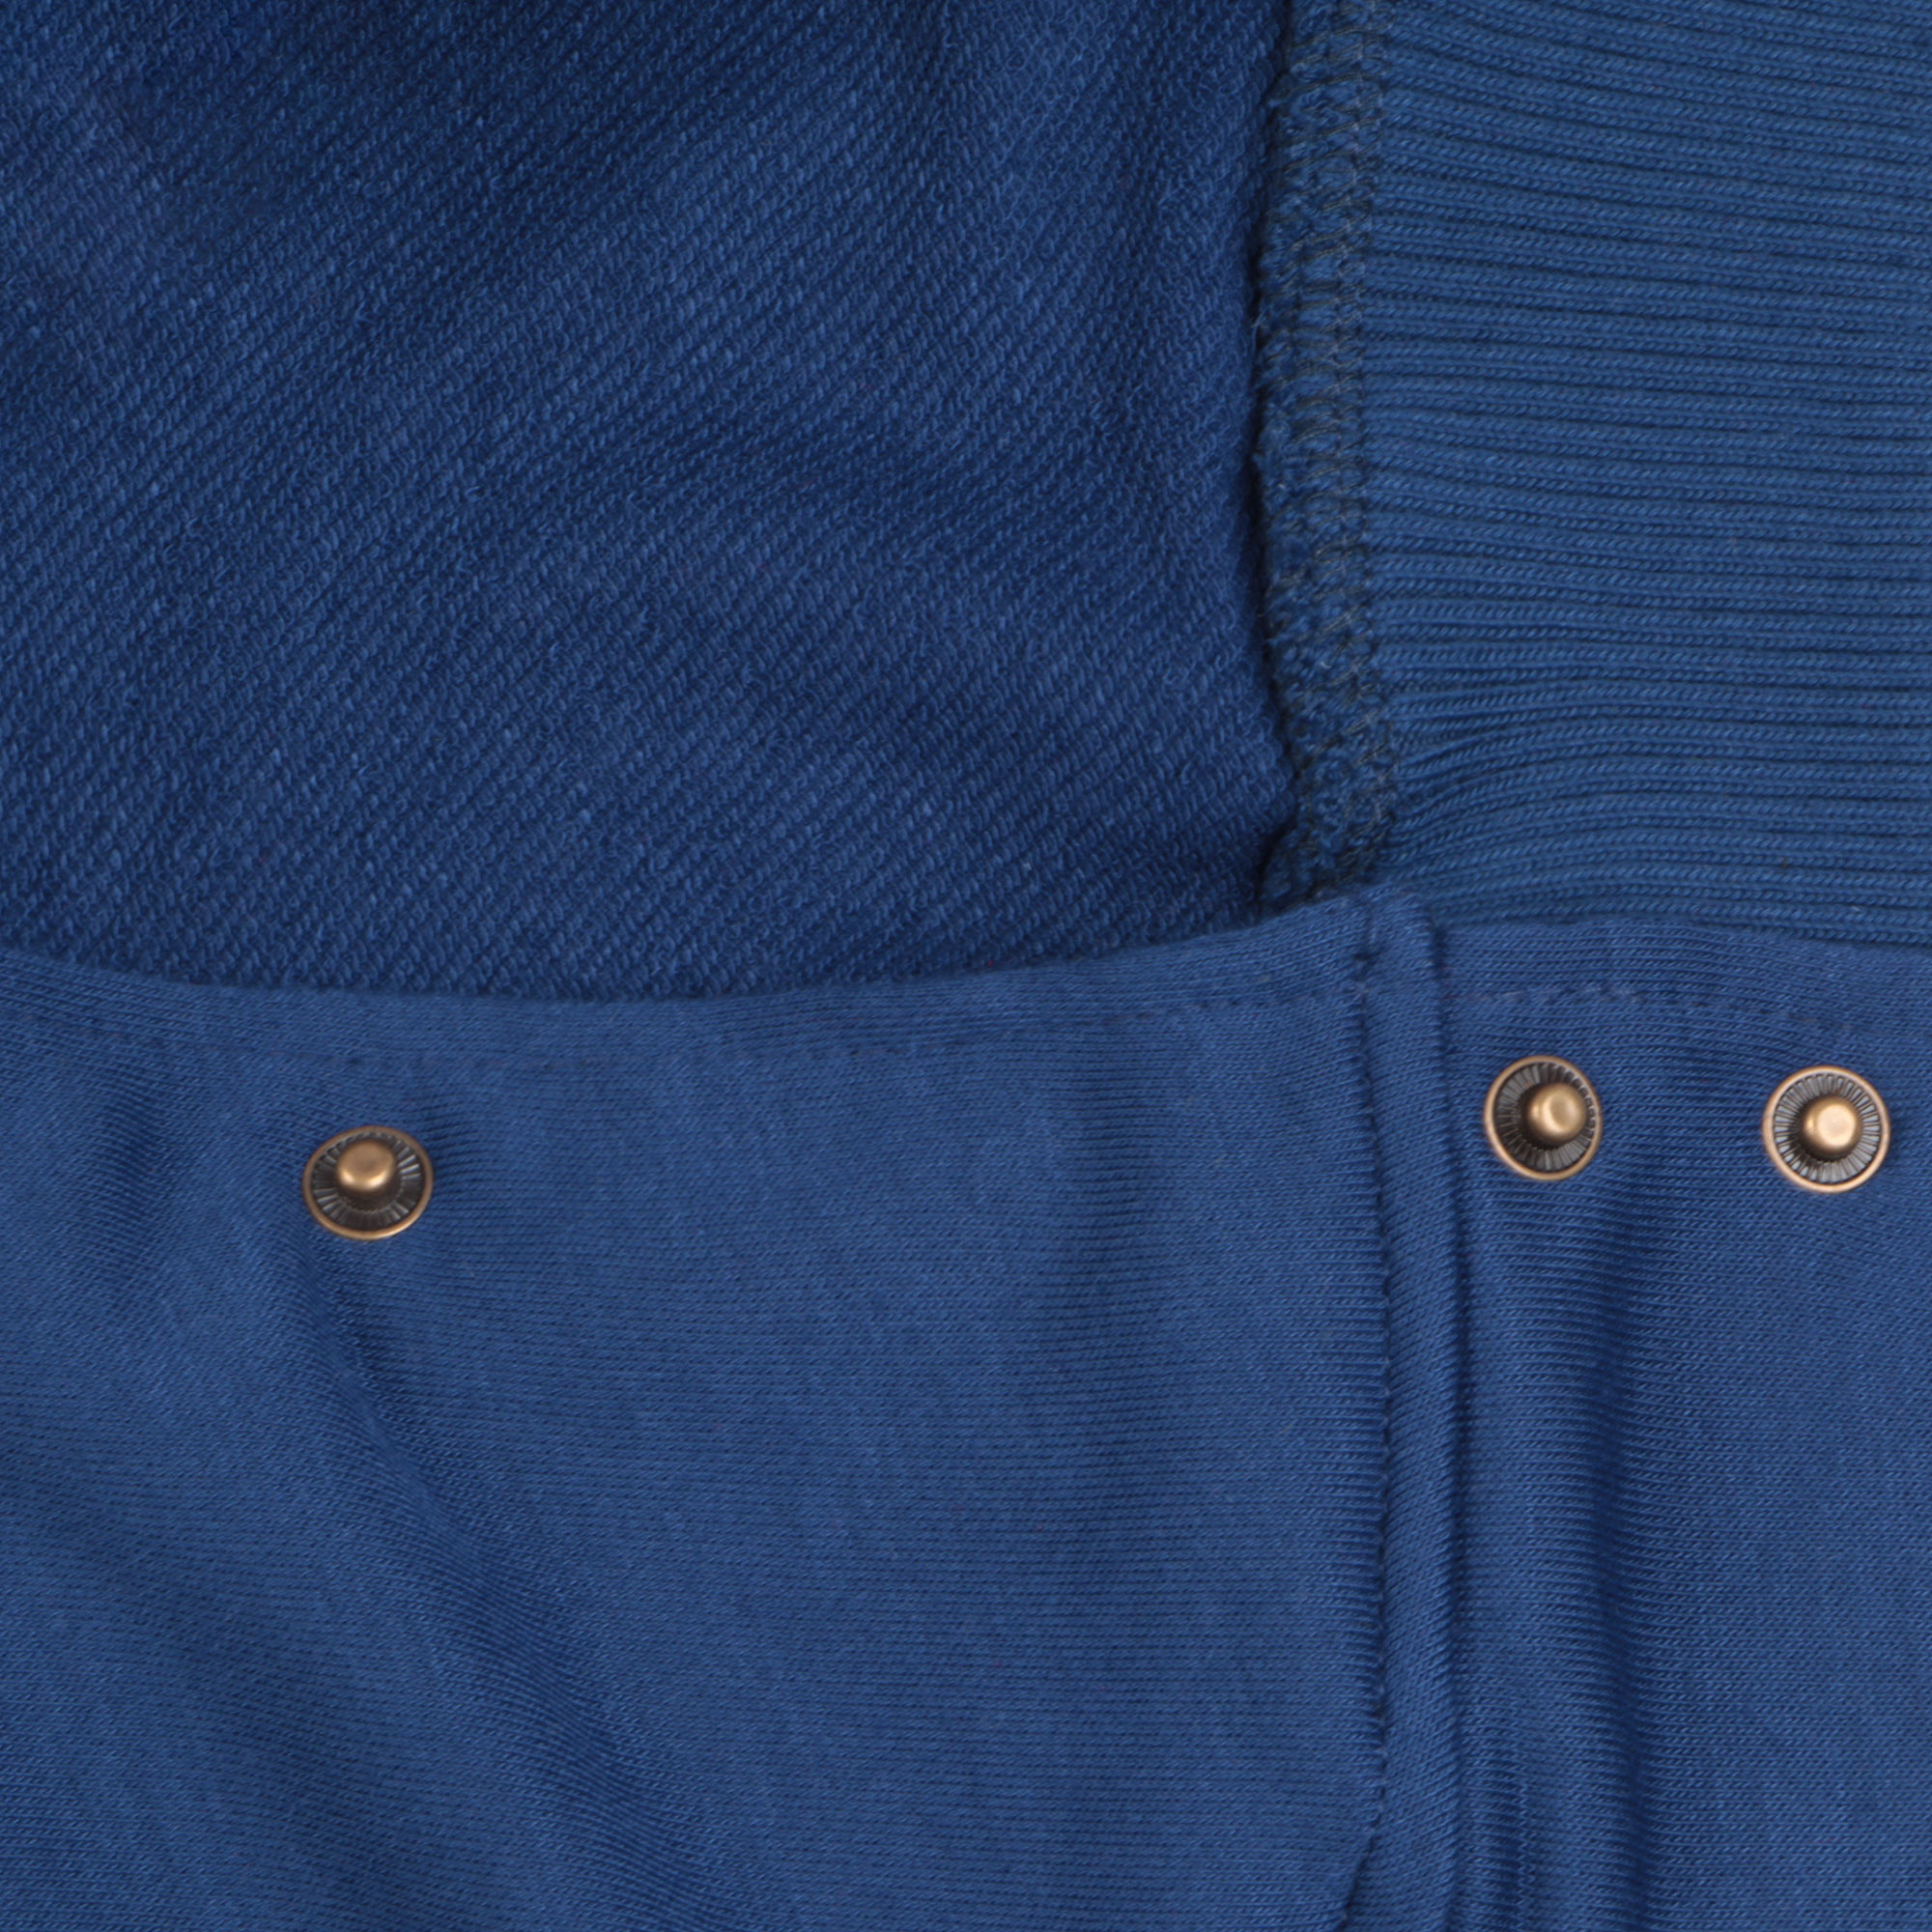 фото Бомбер garment тёмно-синий/белый s хлопок